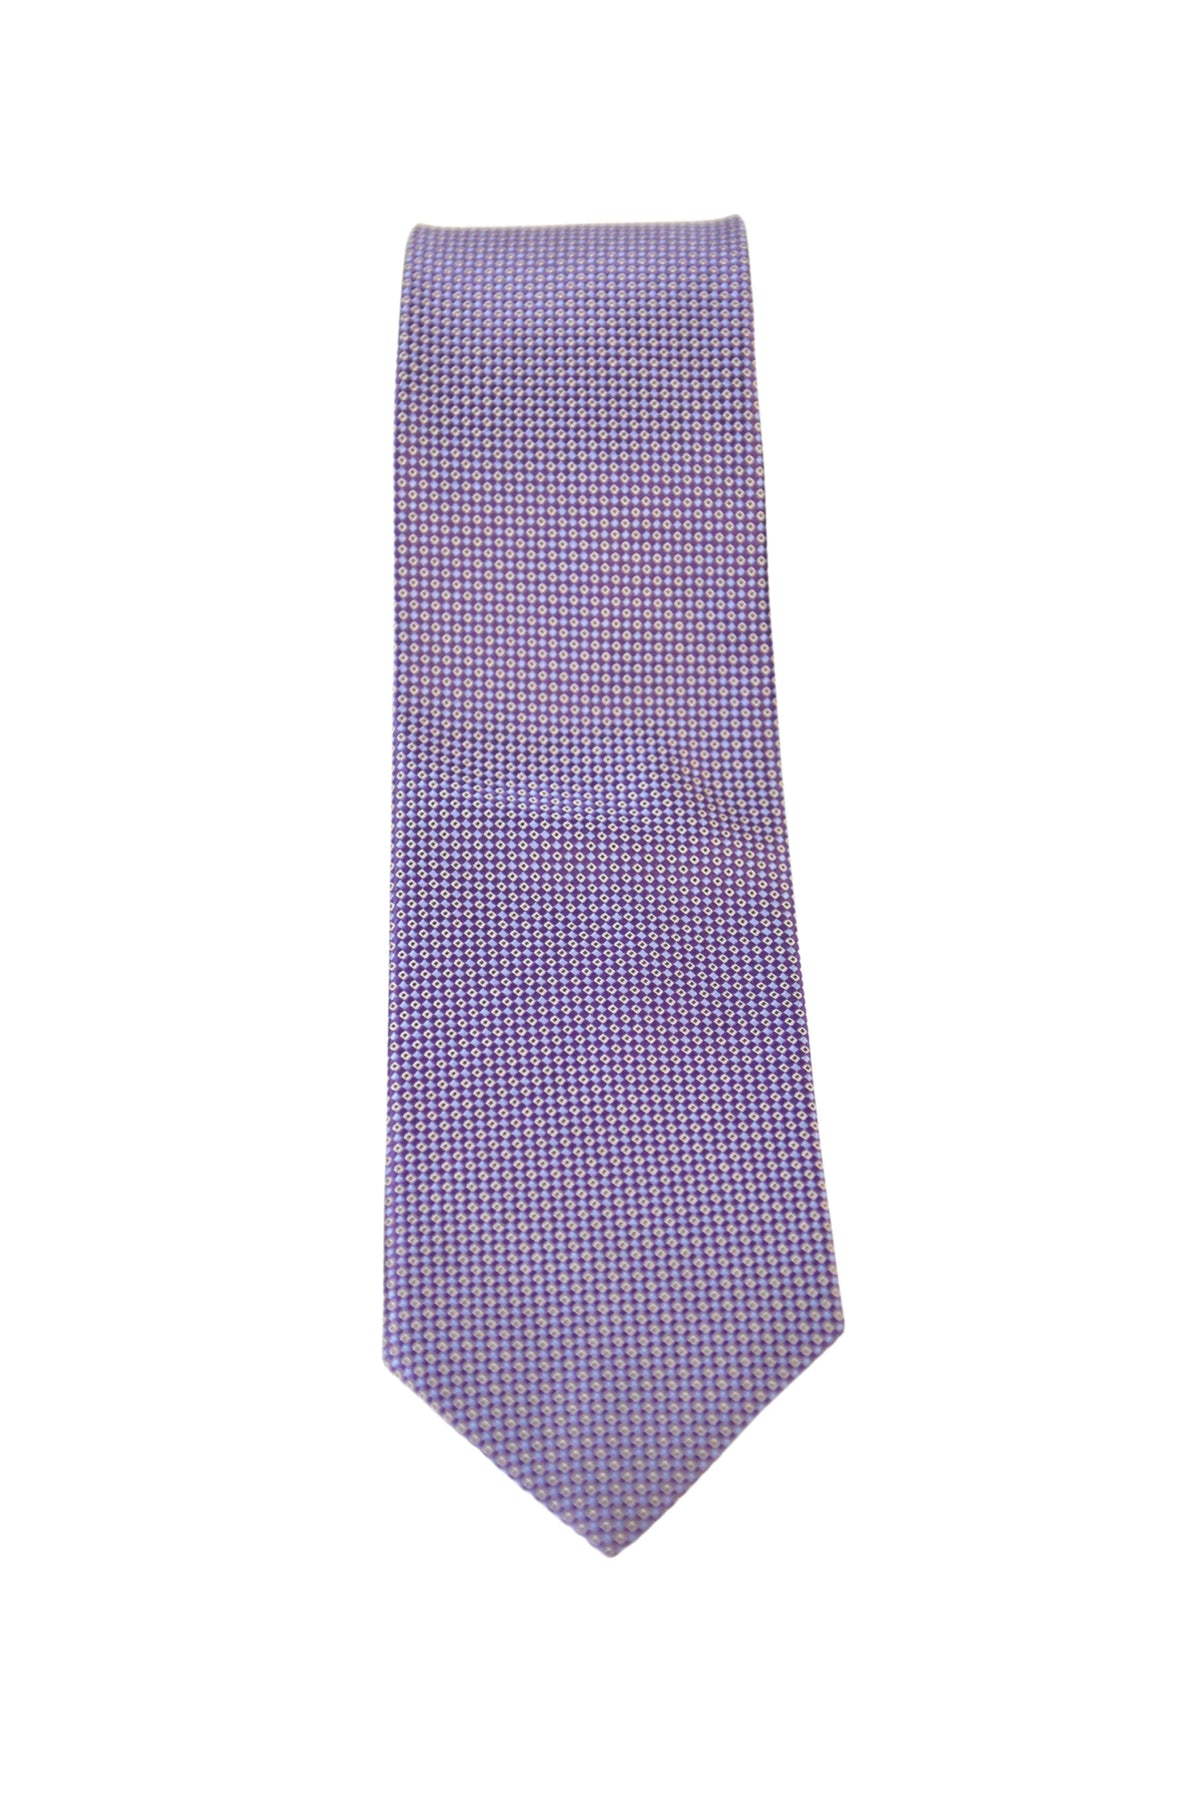 The Suit Depot Purple Dots Arthur Black Premium Silk Tie